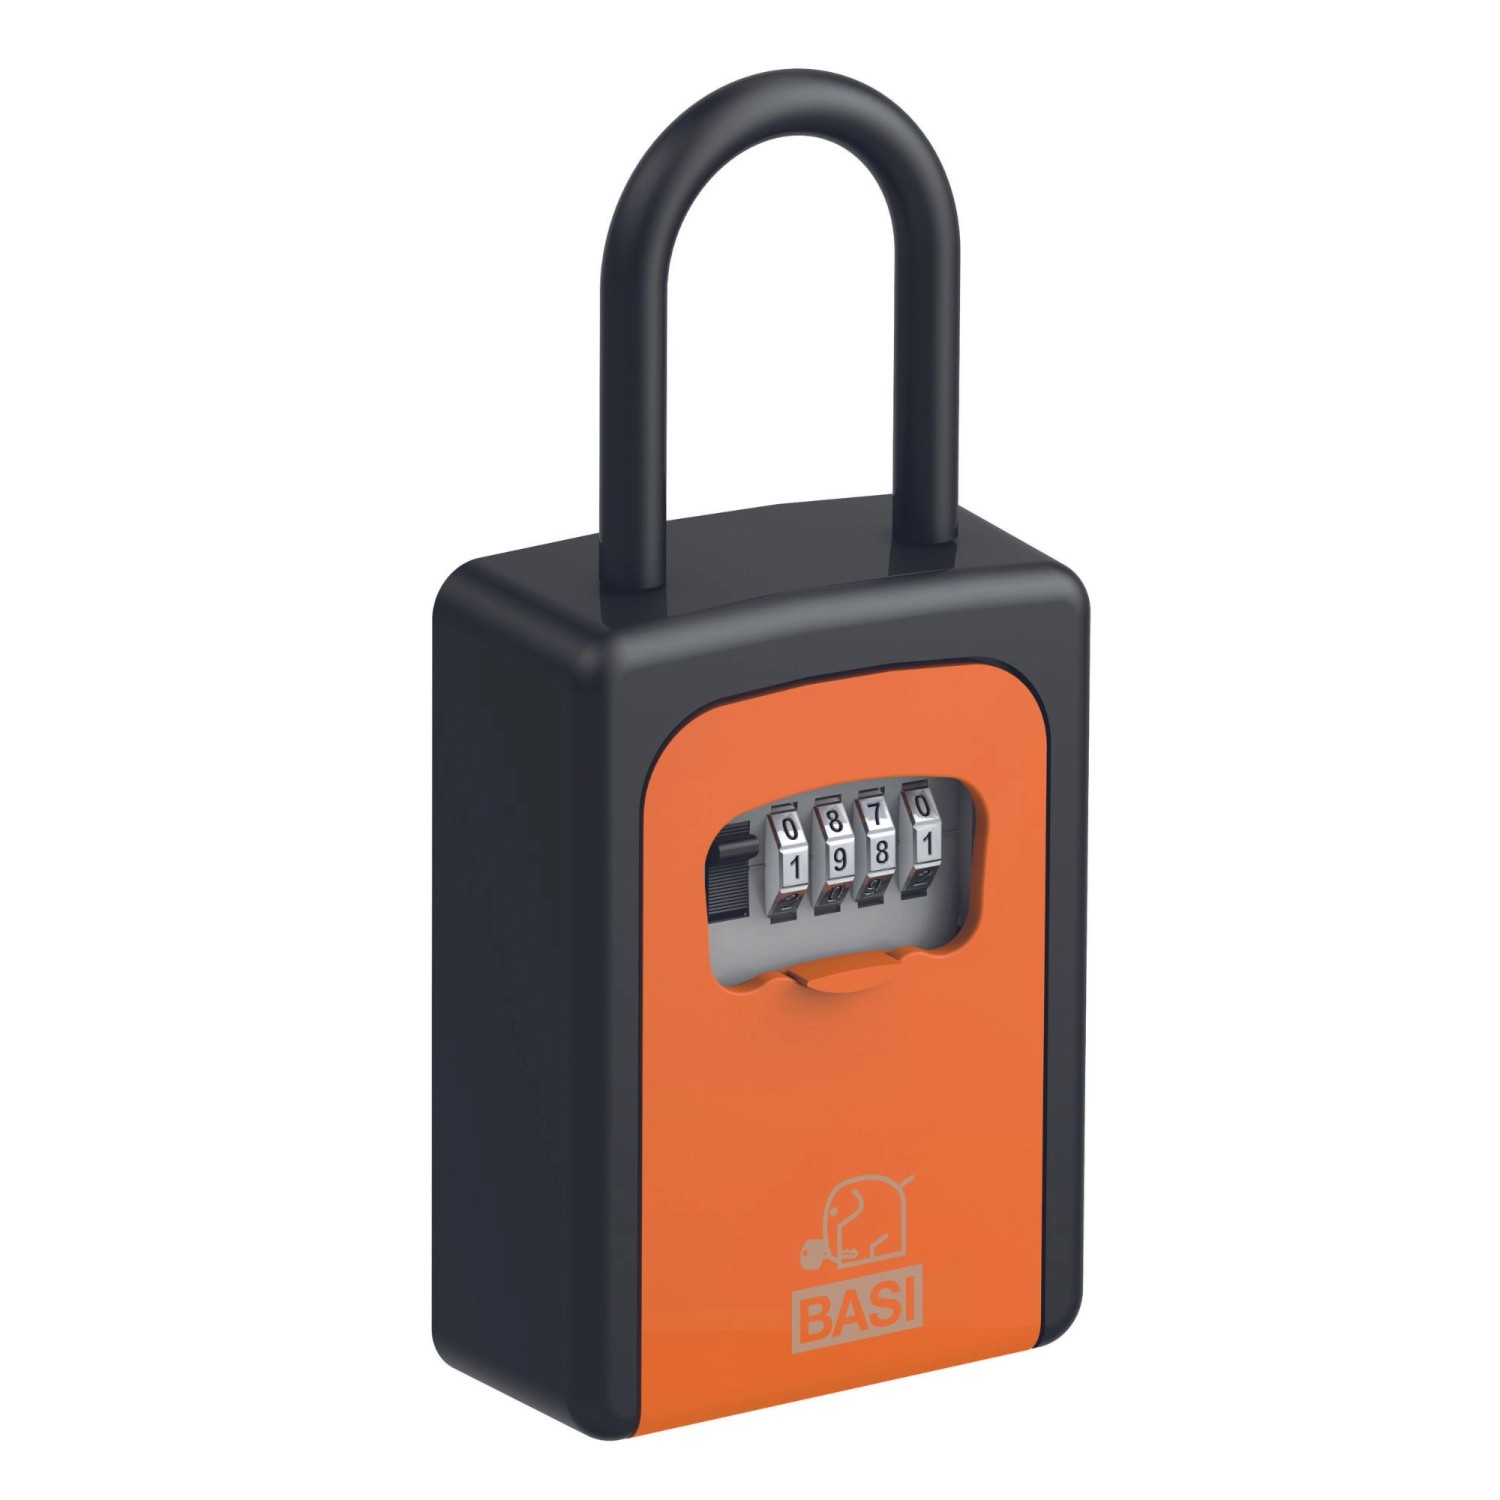 Basi - Schlüsselsafe - SSZ 200B - Schwarz-Orange - mit Zahlenschloss - Aluminium - 2101-0005-1119